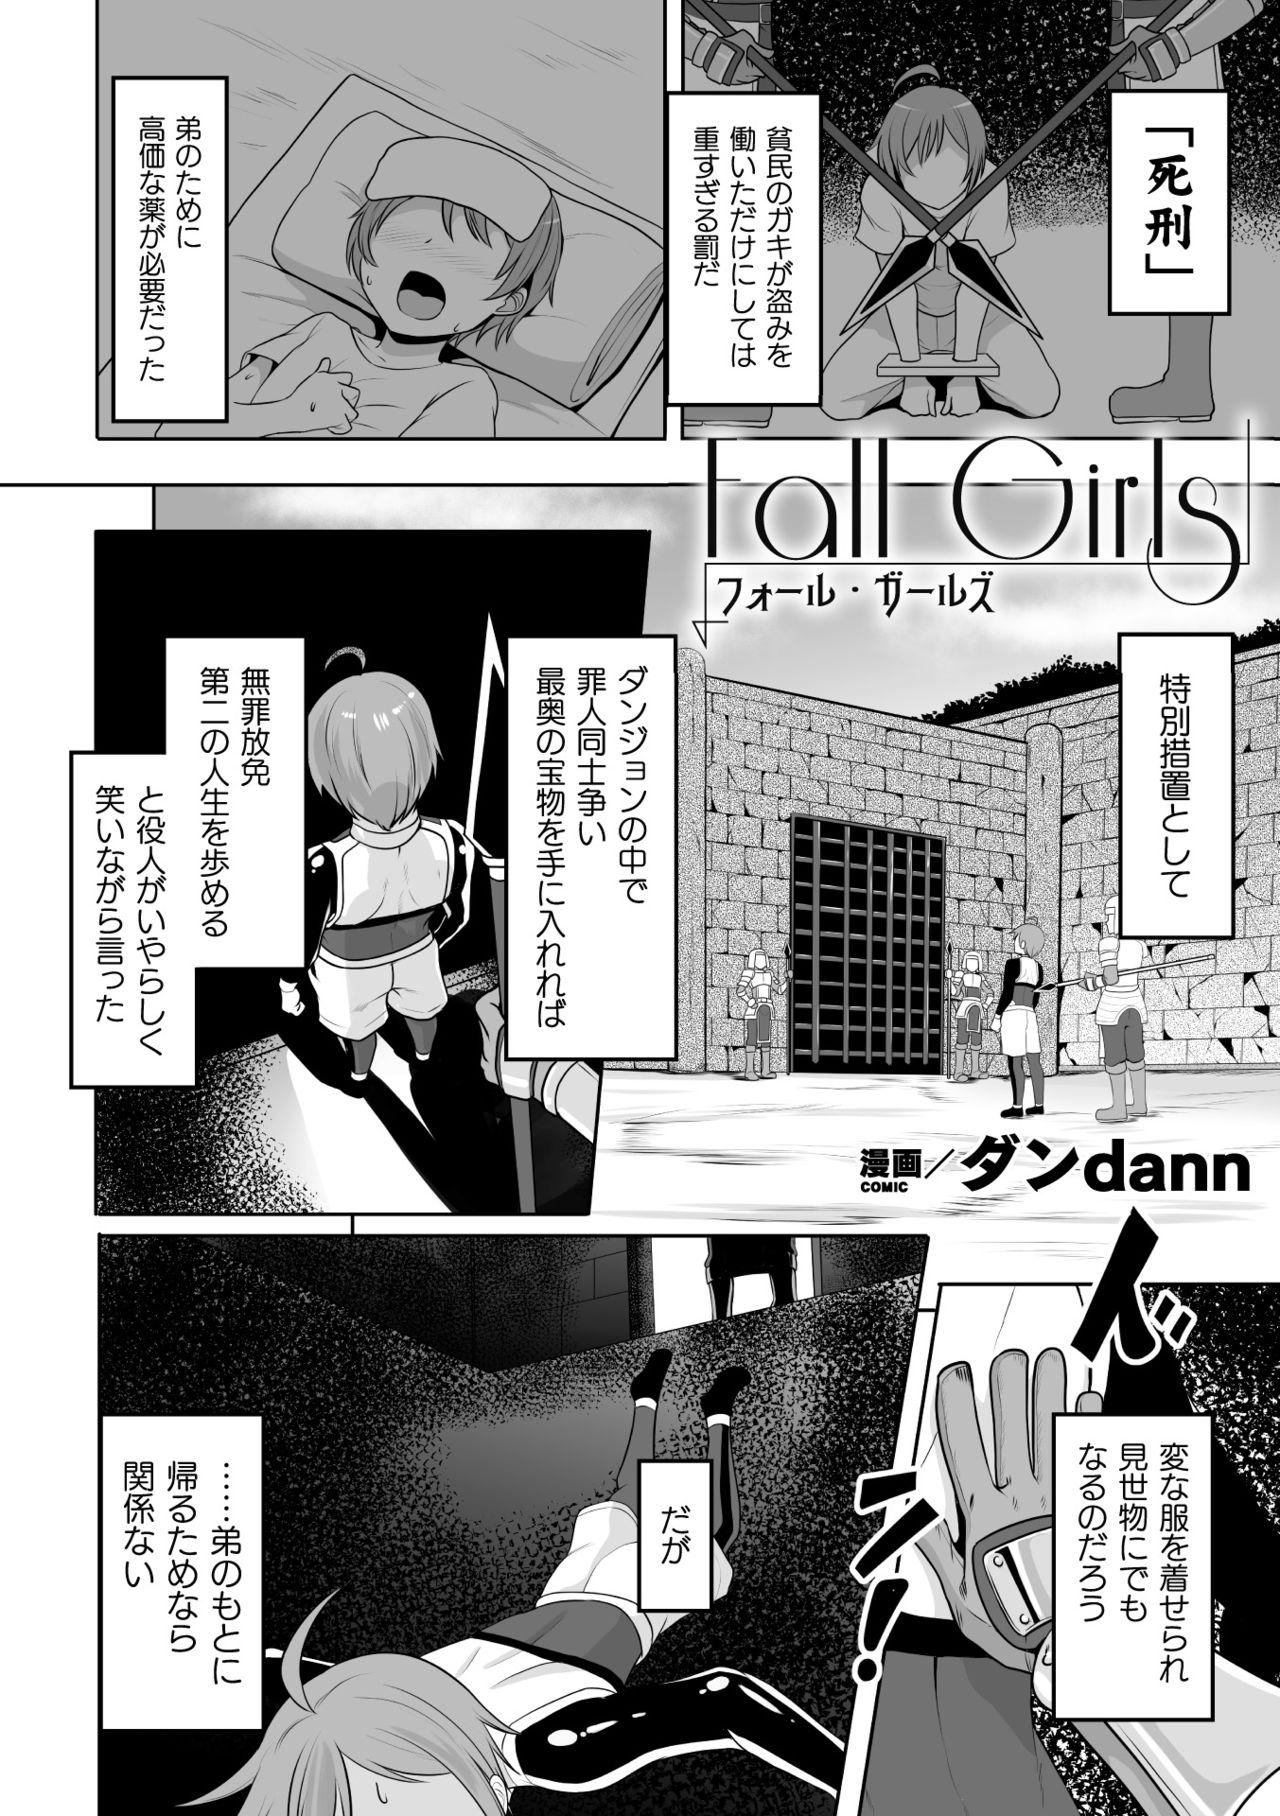 Thong 2D Comic Magazine Mesu Ochi! TS Ero Trap Dungeon Vol. 2 Celebrity Sex Scene - Page 4